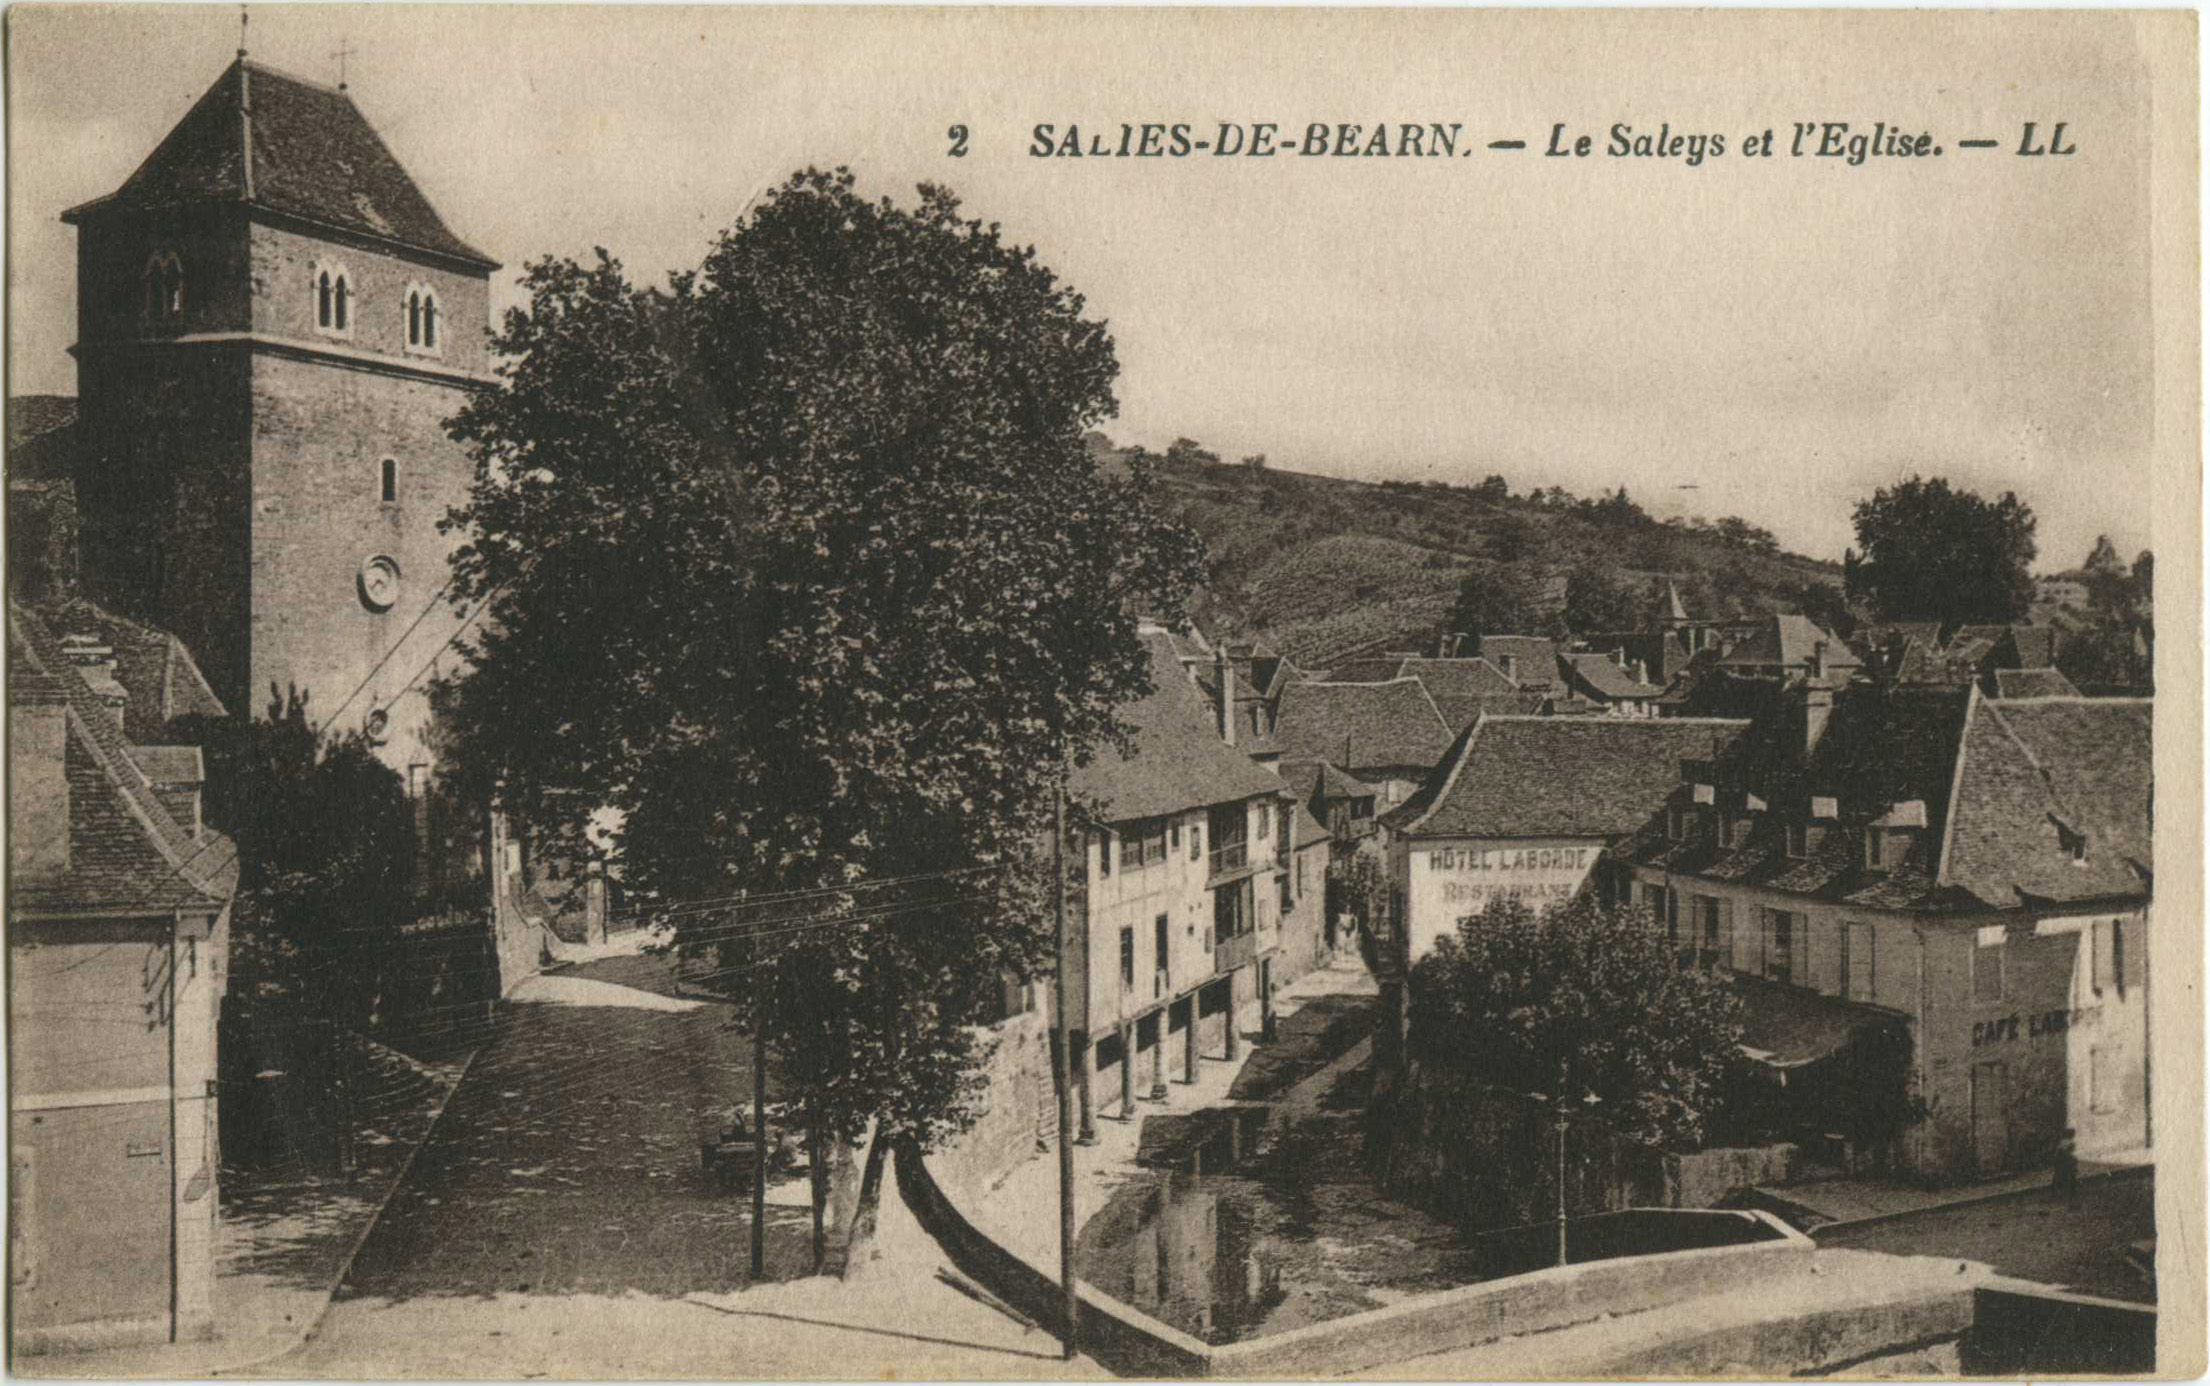 Salies-de-Béarn - Le Saleys et l'Eglise